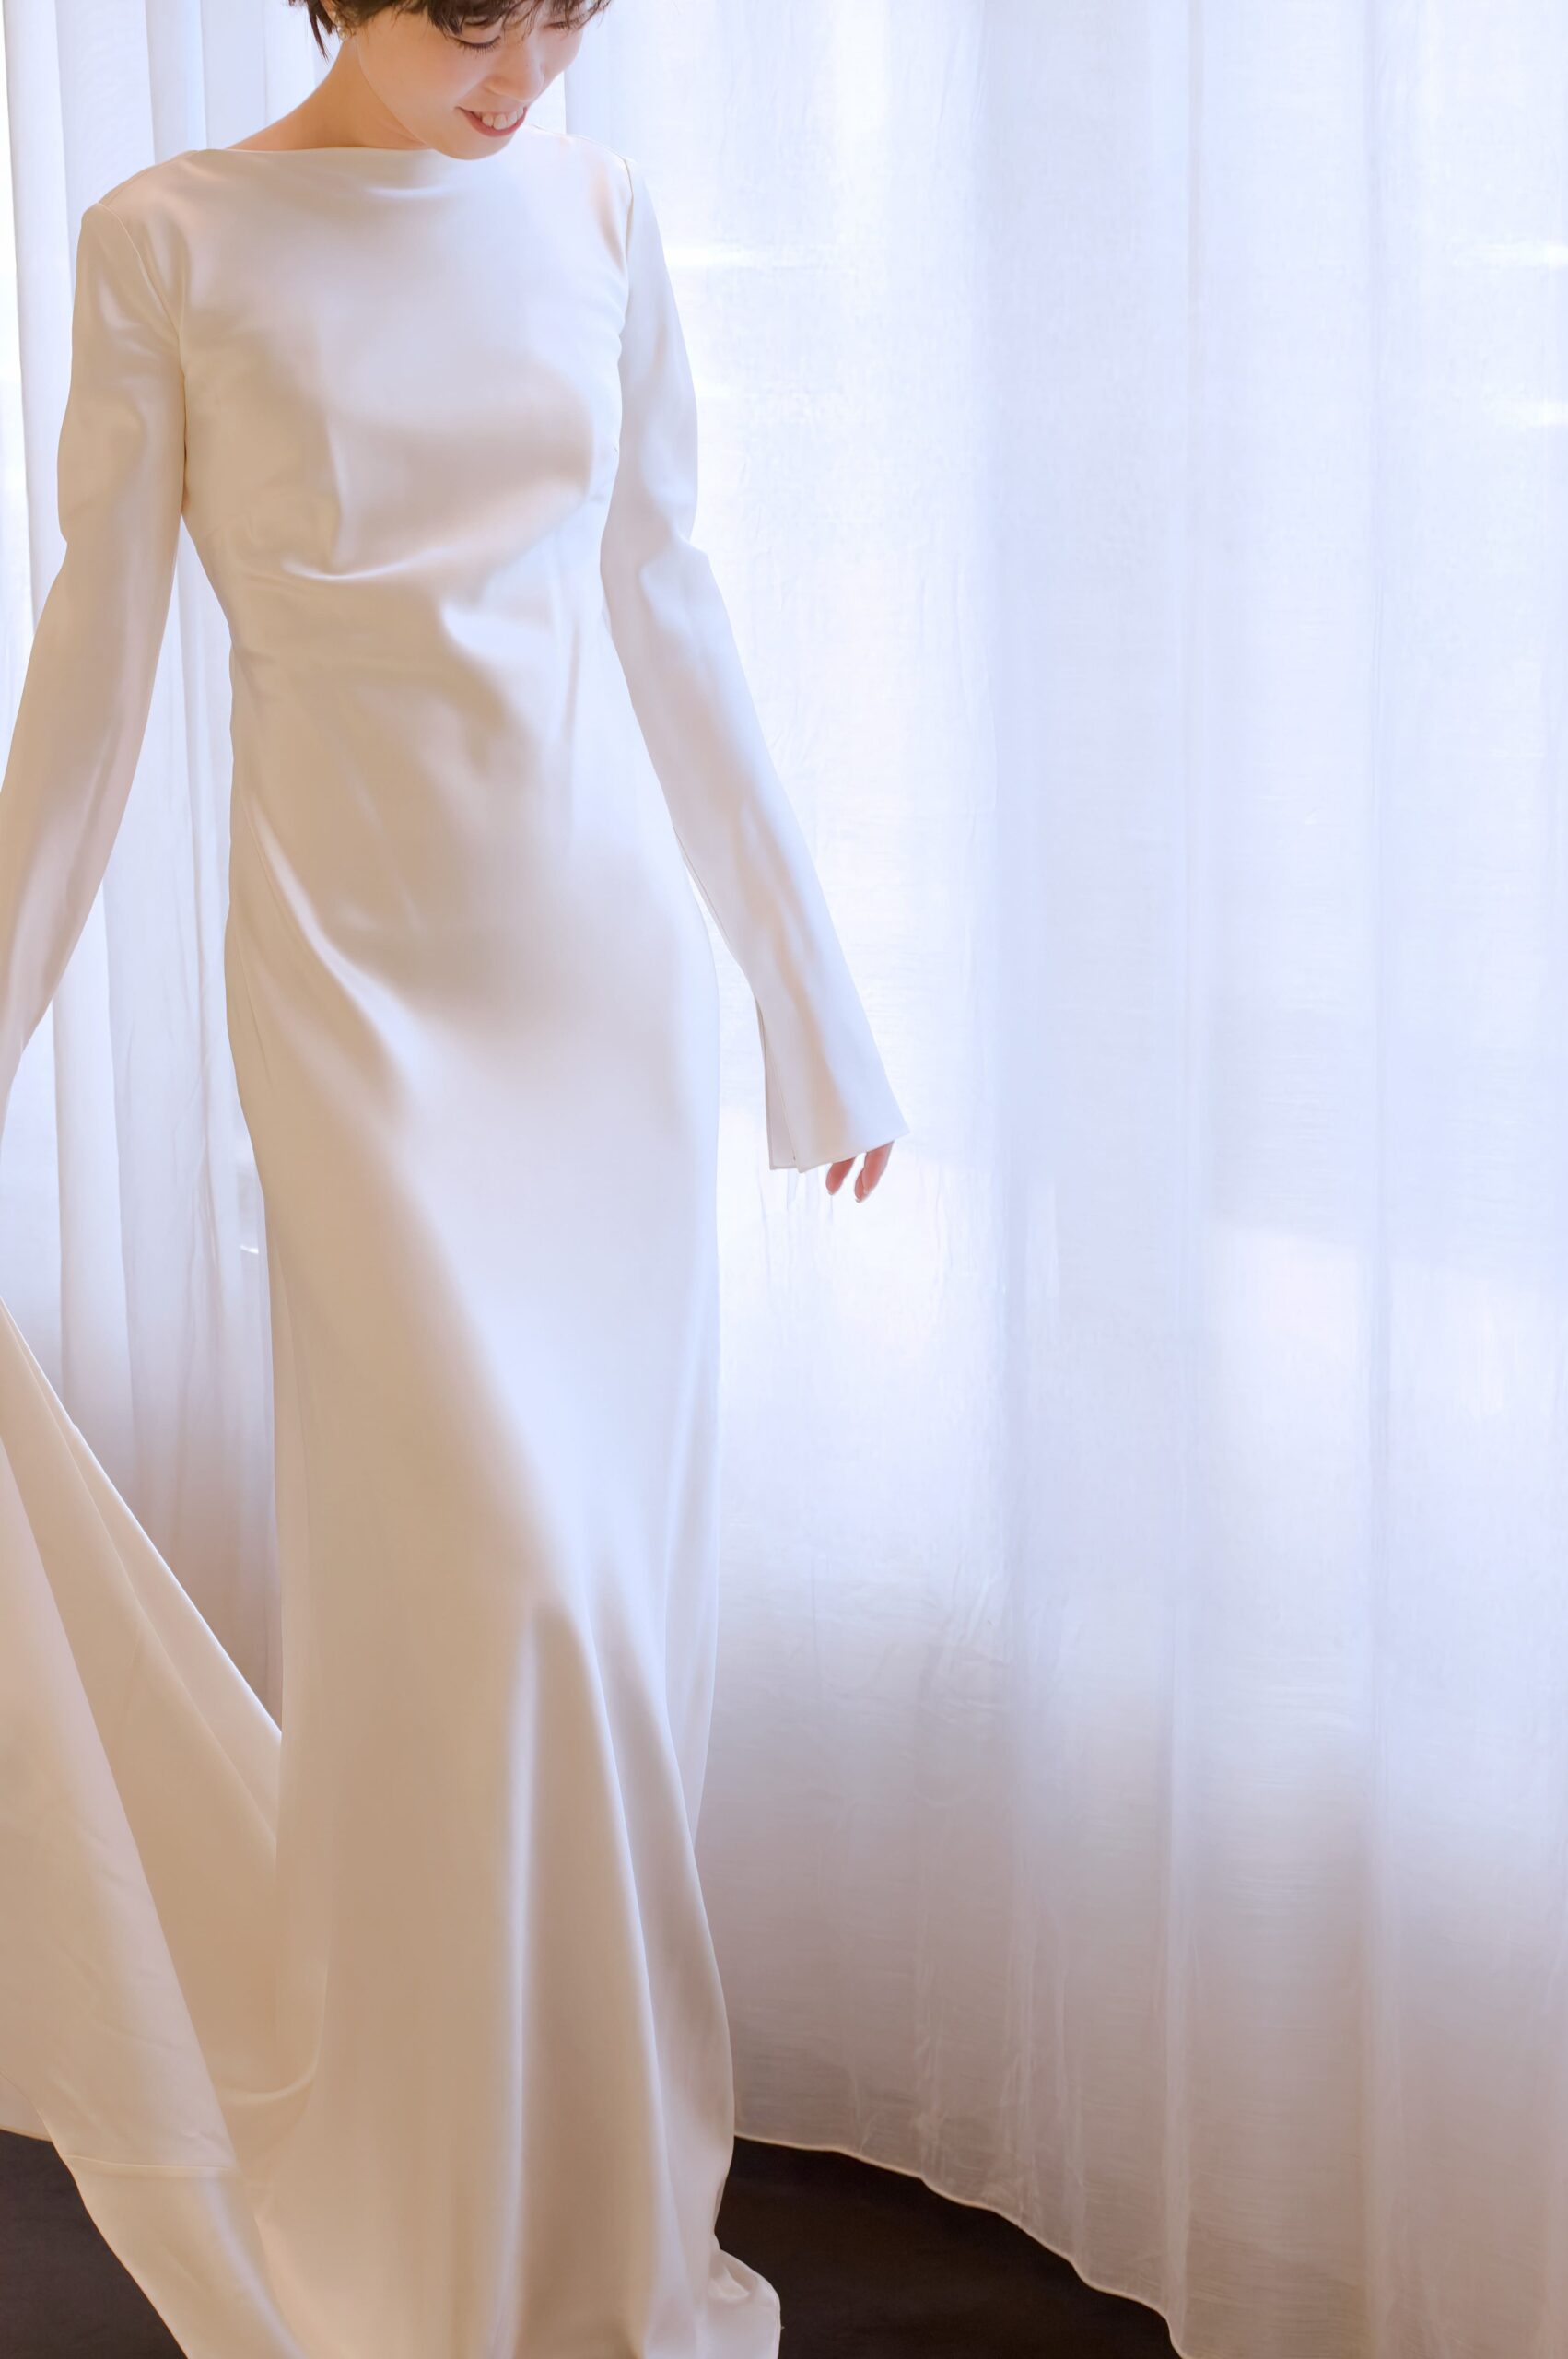 自然光差し込むガーデンやチャペルにお勧めの新作ウェディングドレスは、シルクの艶が美しく輝くシンプルで大人っぽいロングスリーブのデザインです